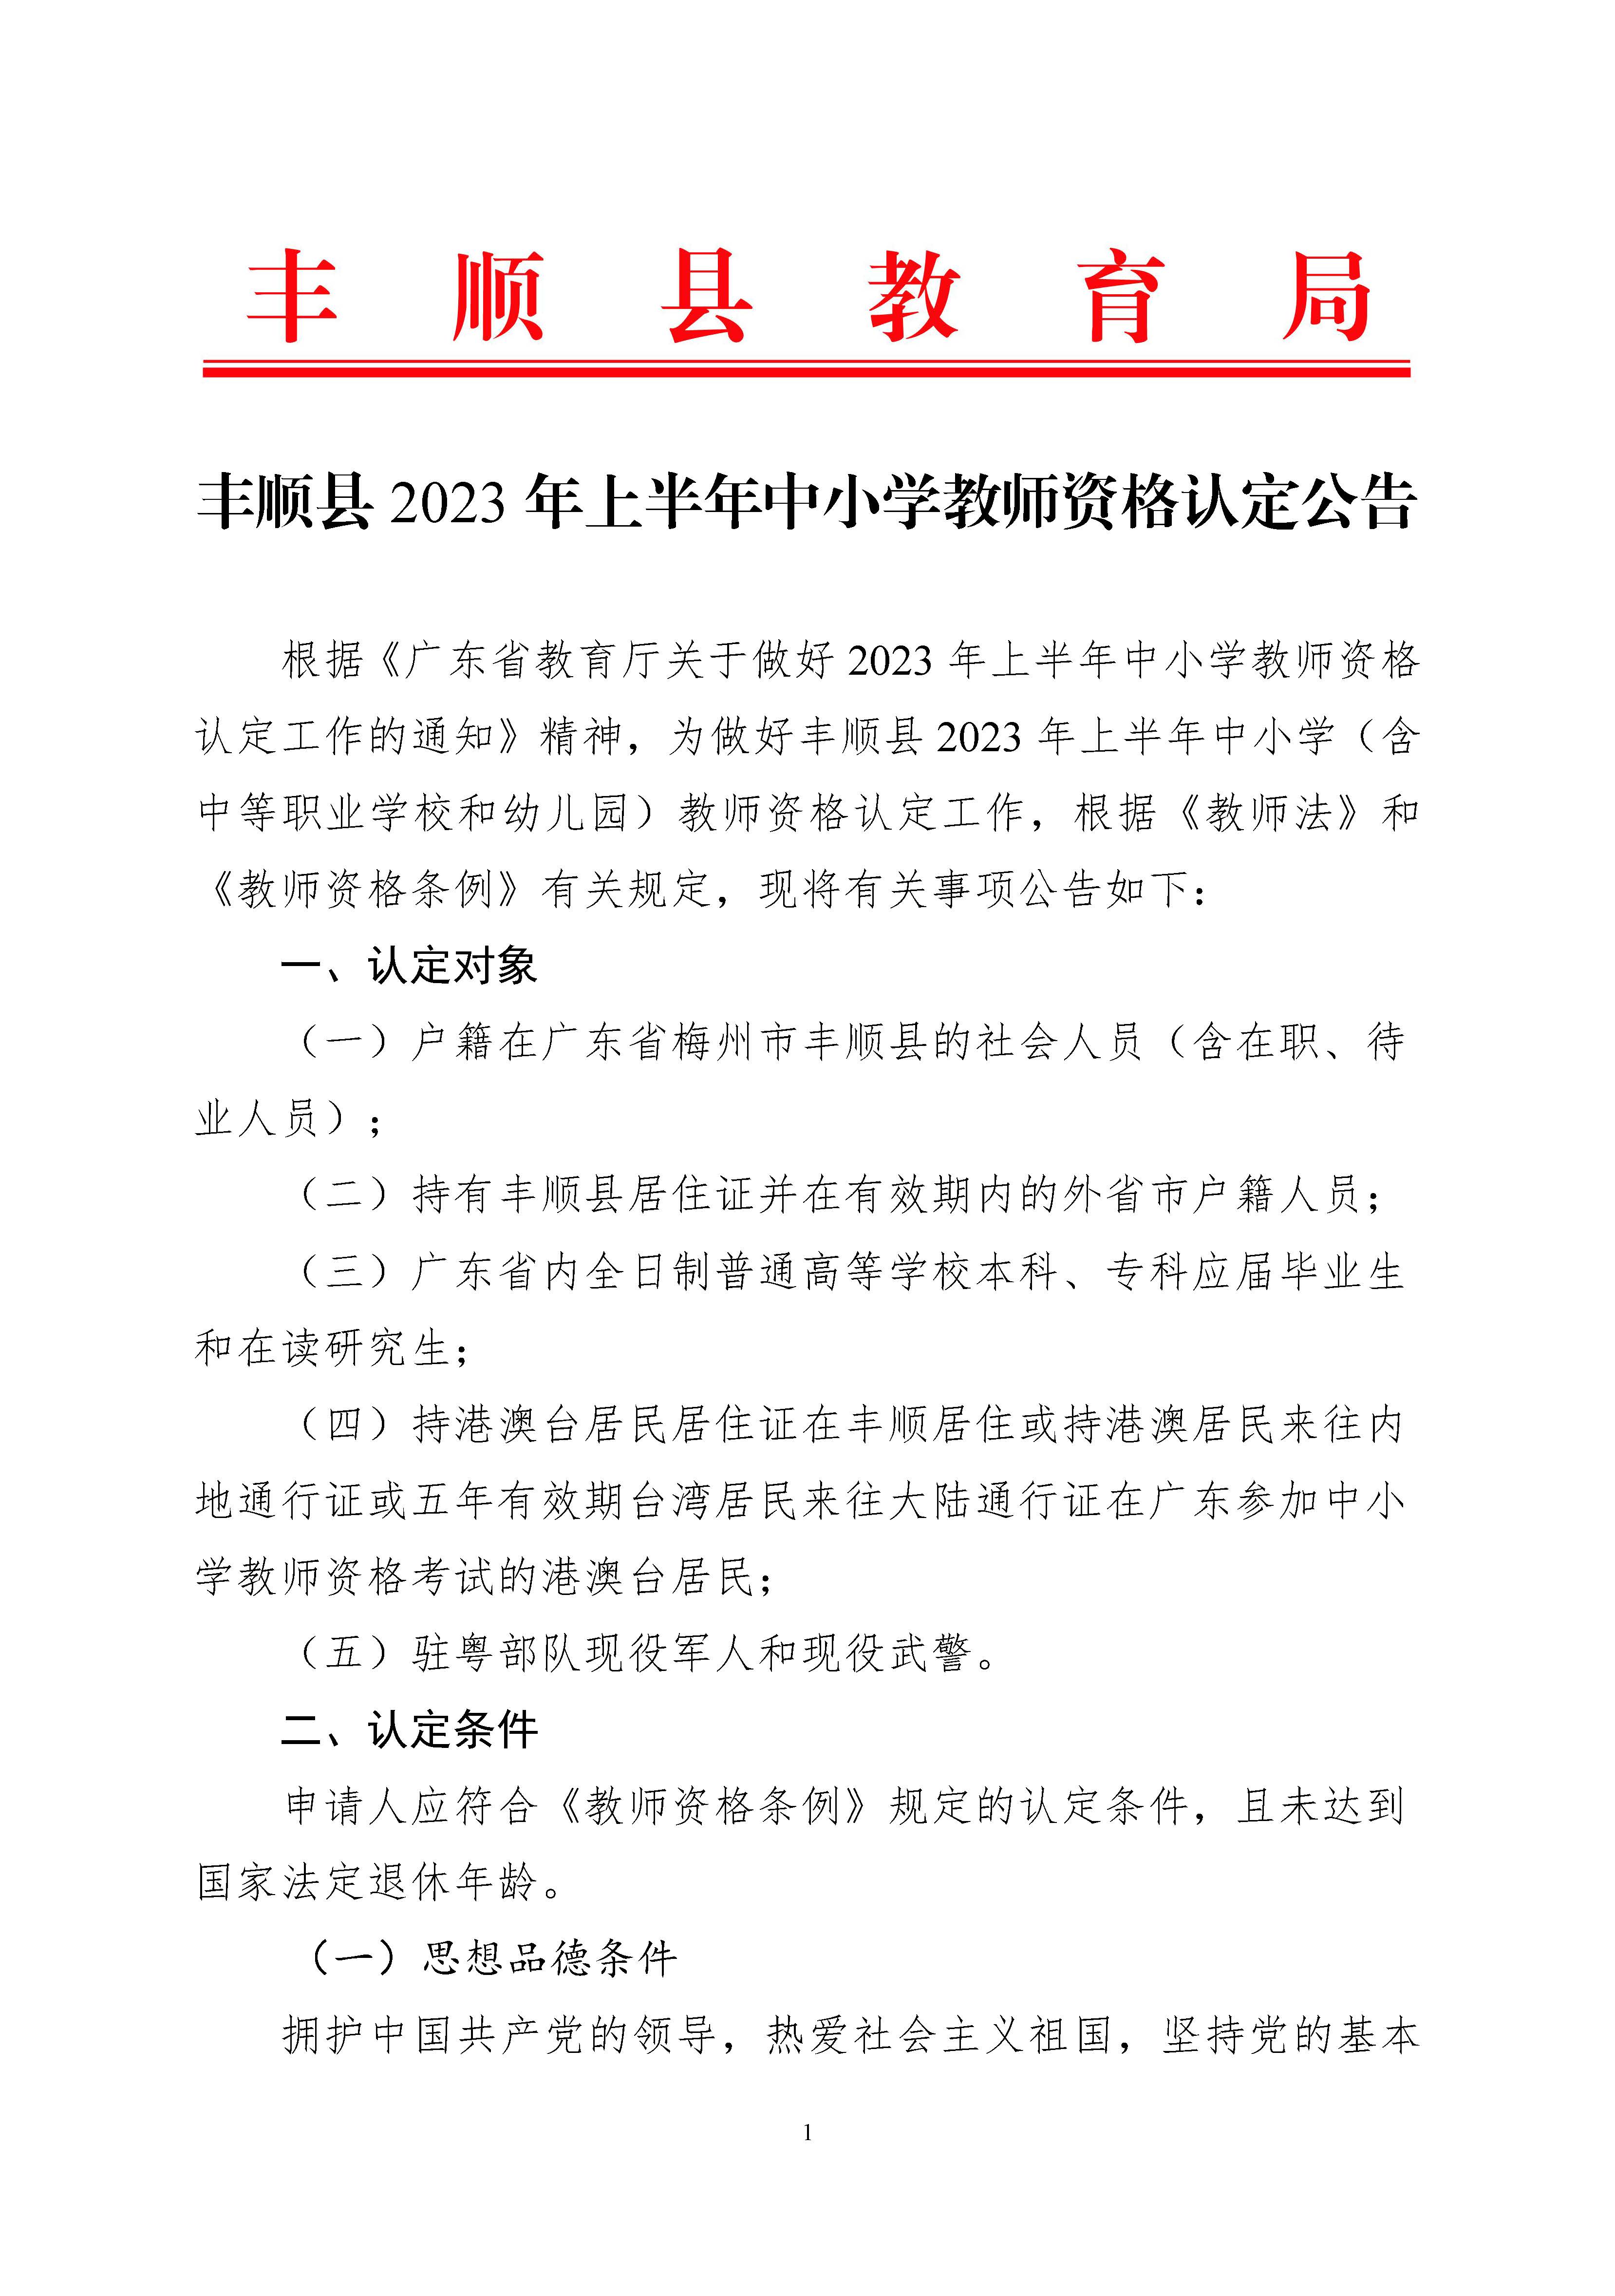 丰顺县2023年上半年中小学教师资格认定公告_页面_1.jpg